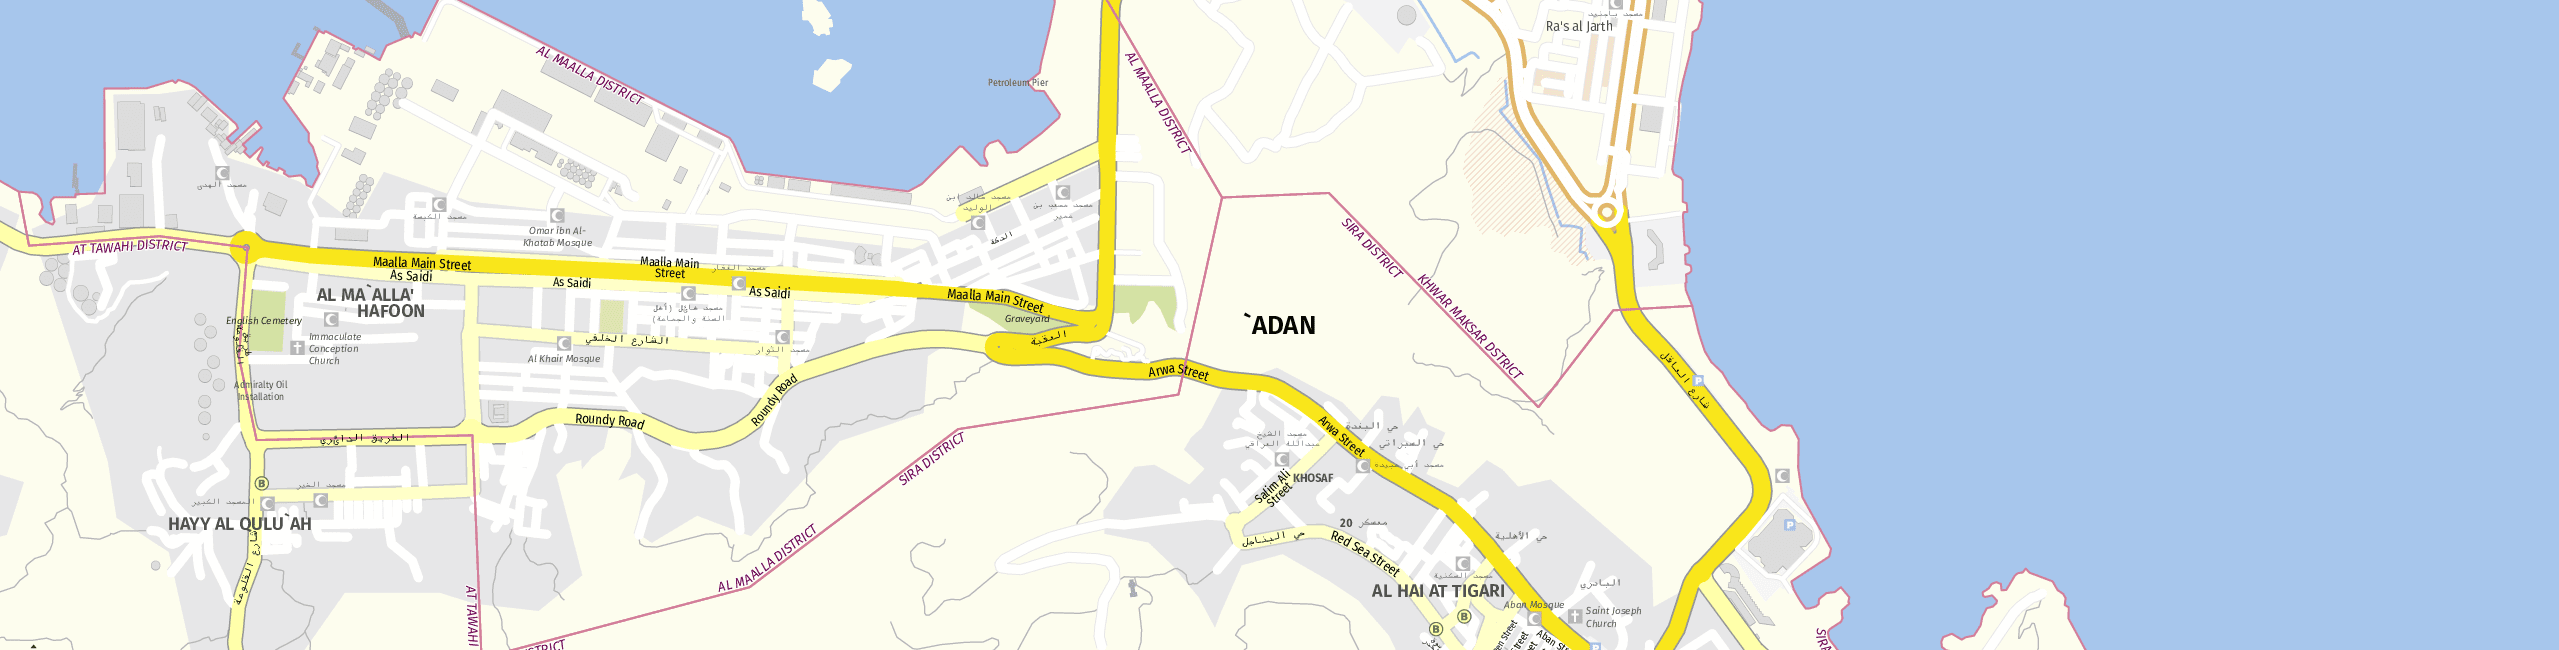 Stadtplan Aden zum Downloaden.